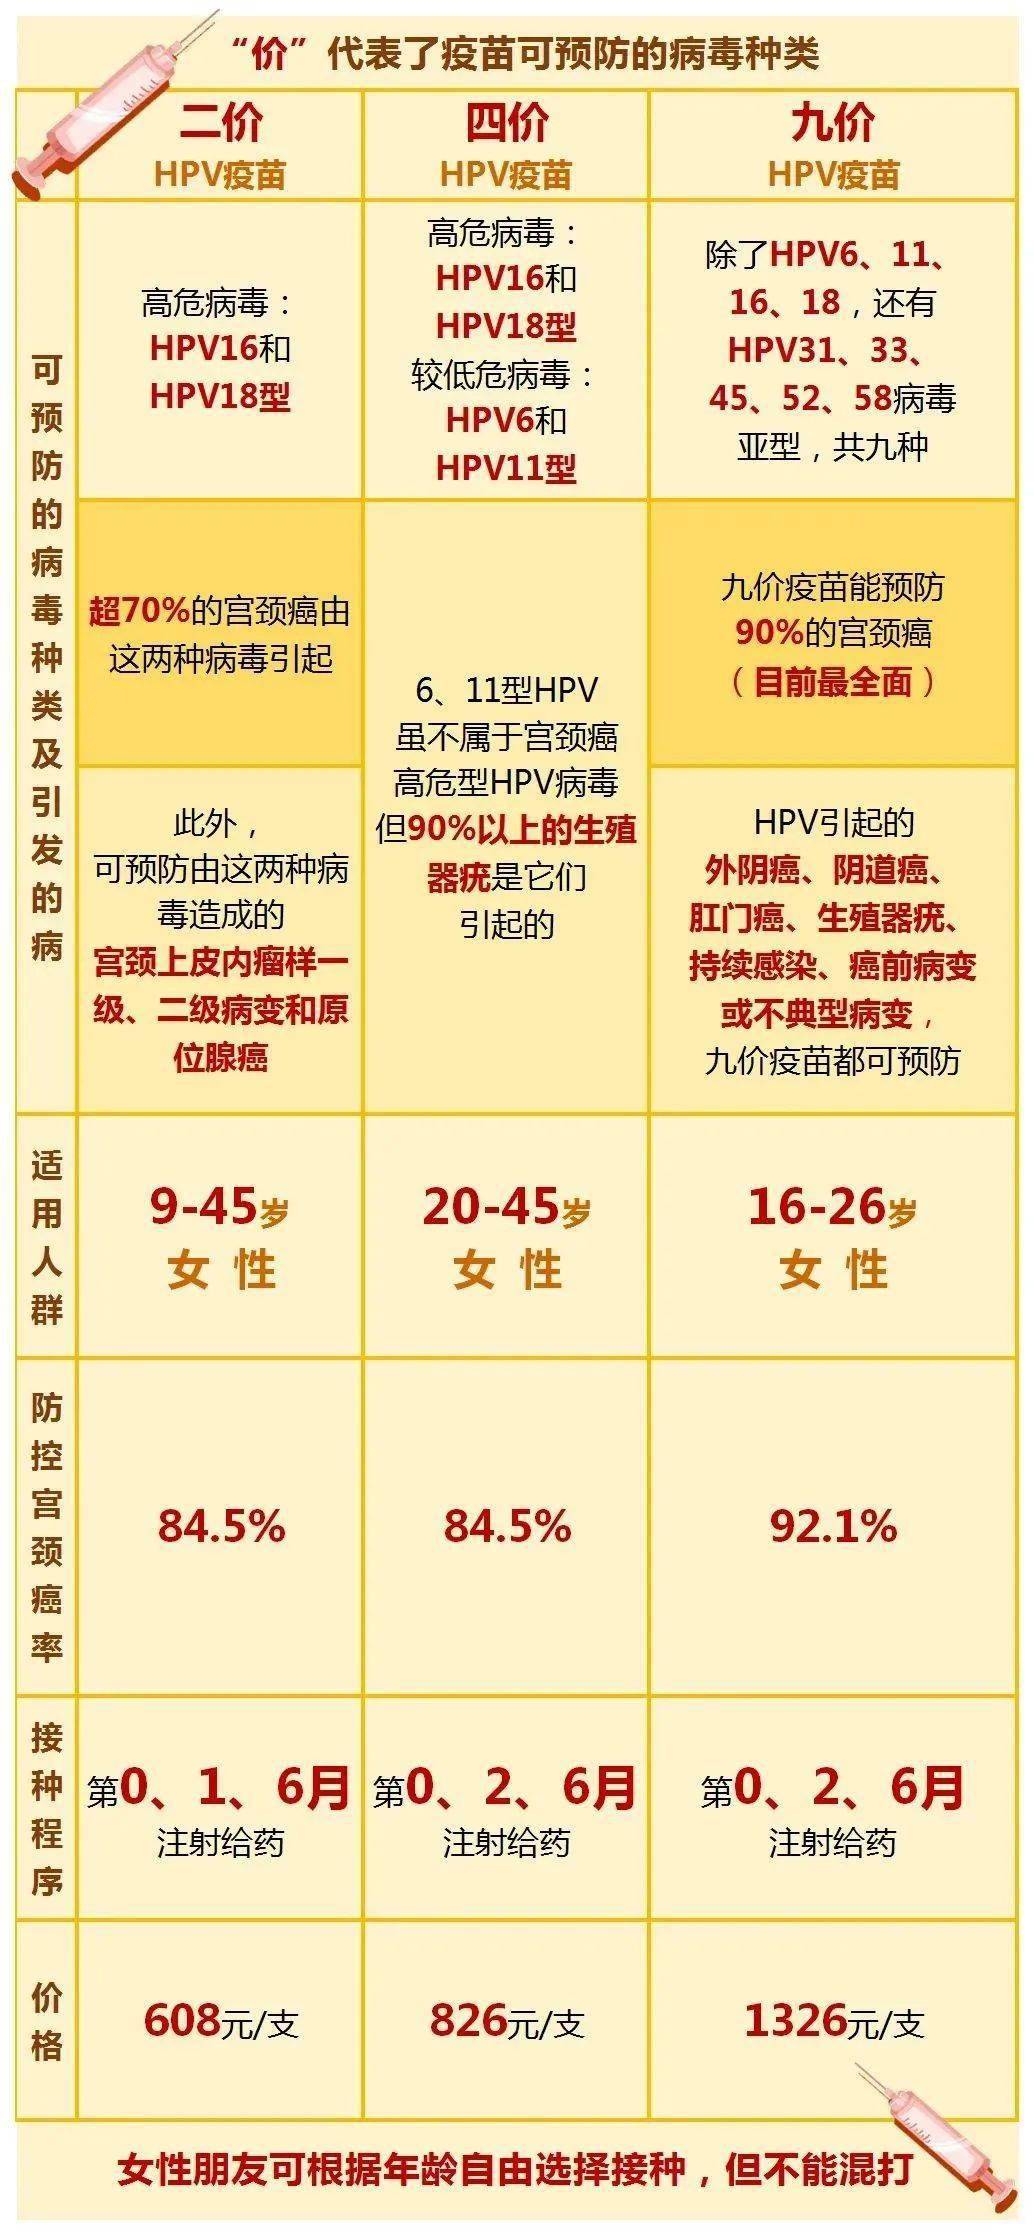 上海hpv九价疫苗预约_南宁9价hpv疫苗预约_威海hpv疫苗9价预约